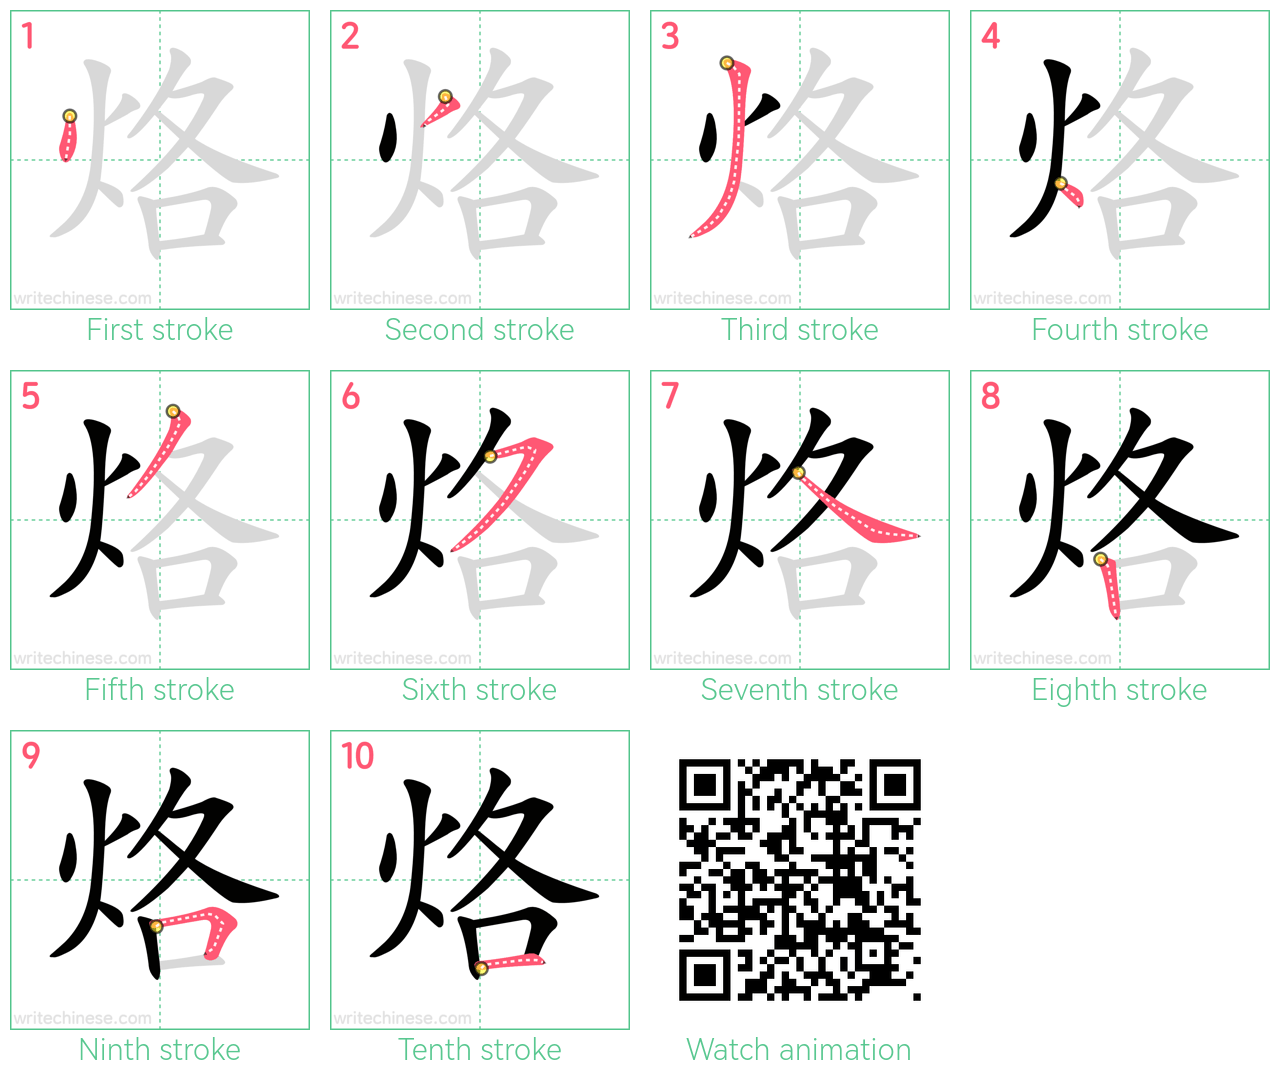 烙 step-by-step stroke order diagrams